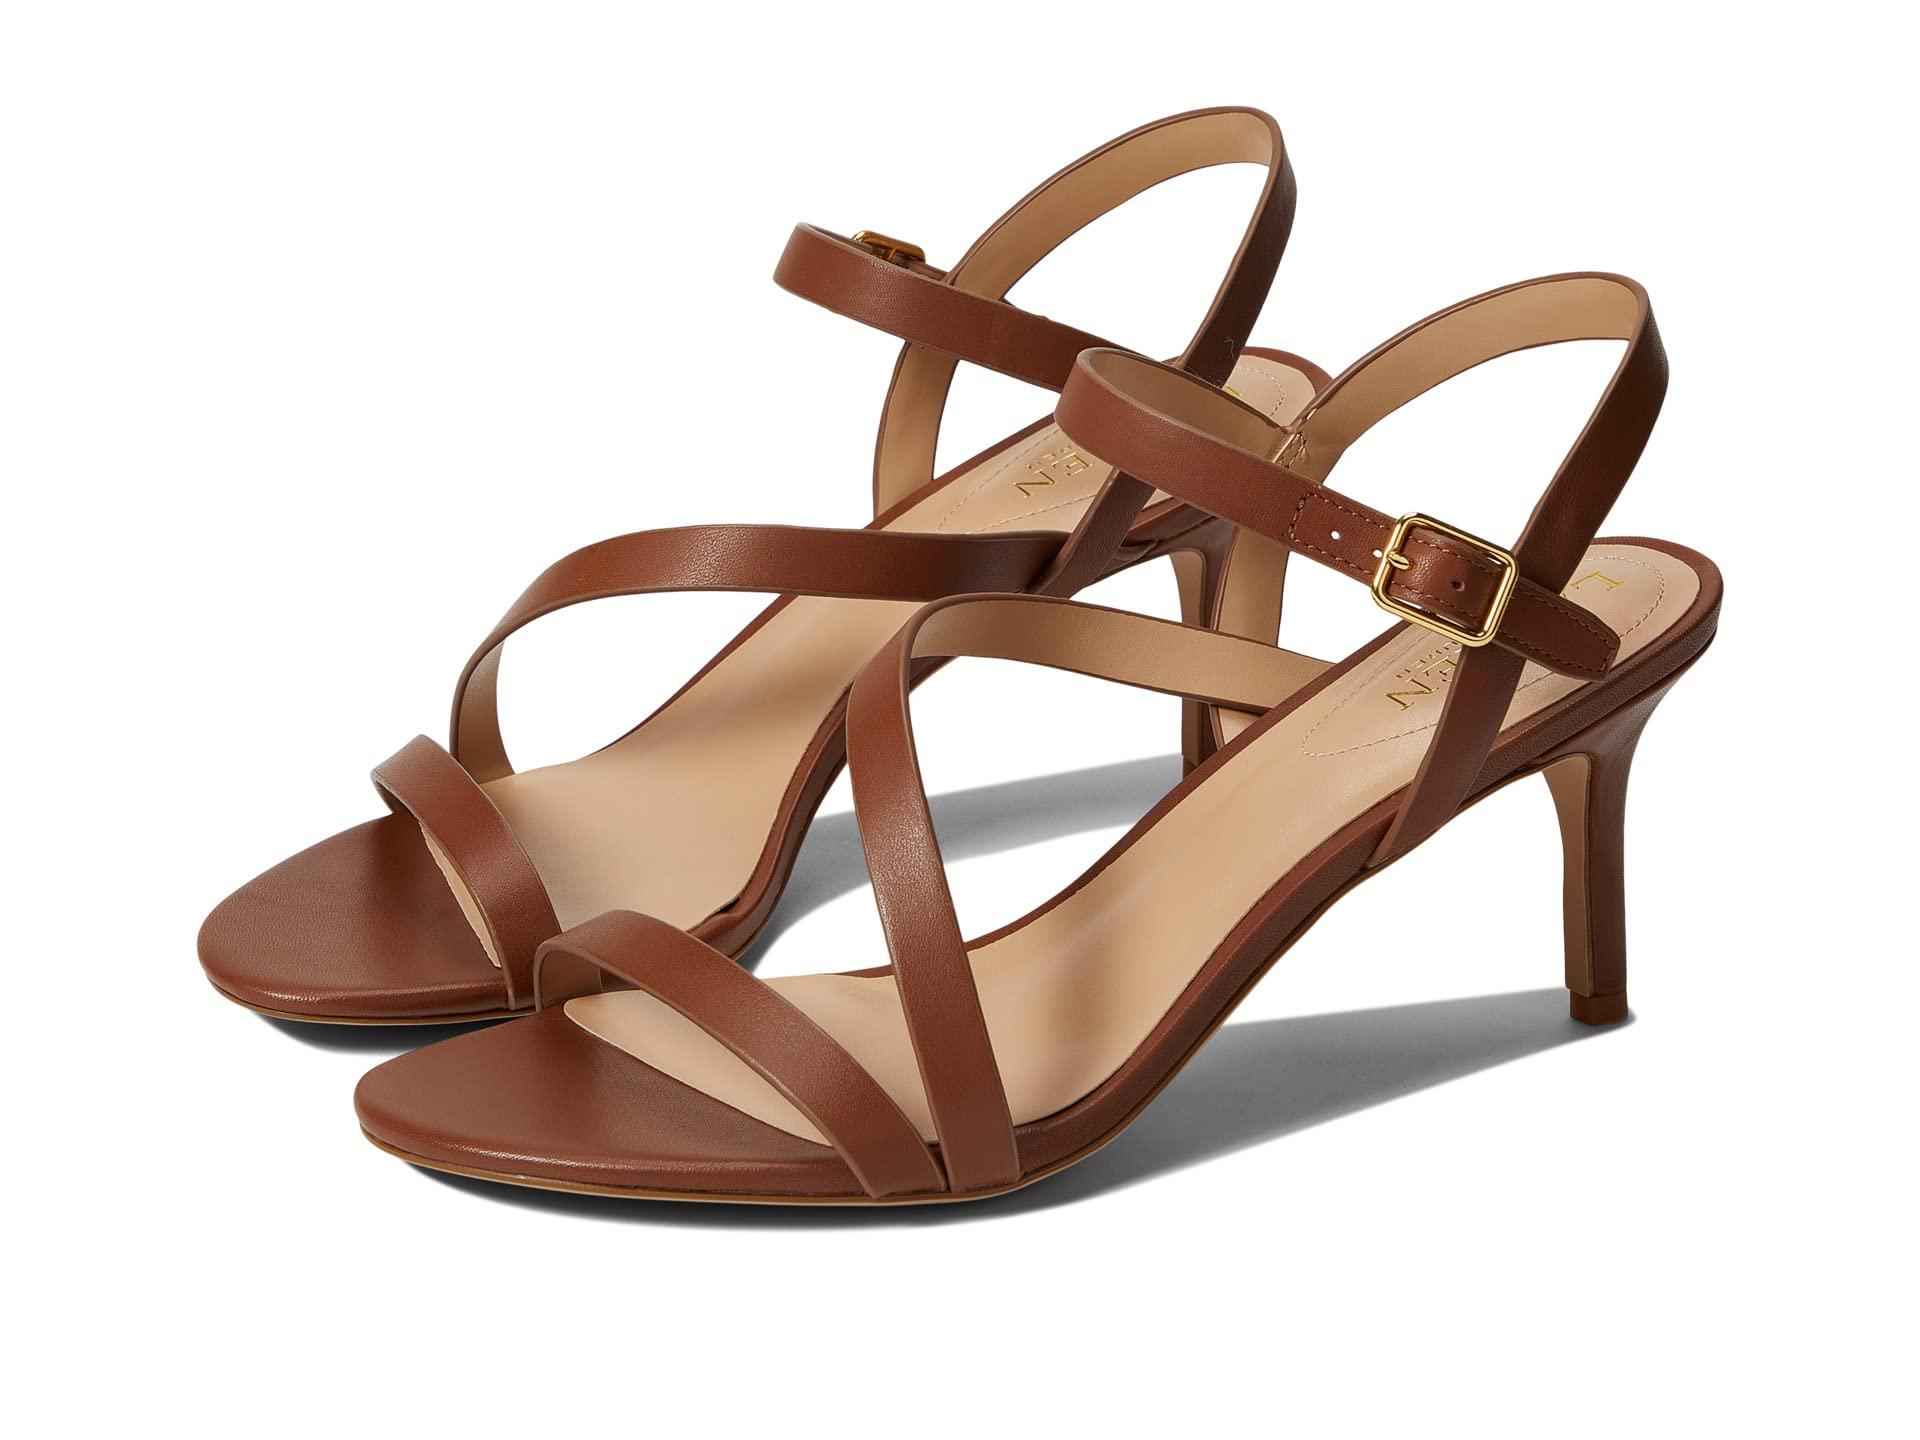 Lauren by Ralph Lauren Landyn Nappa Leather Sandal in Brown | Lyst